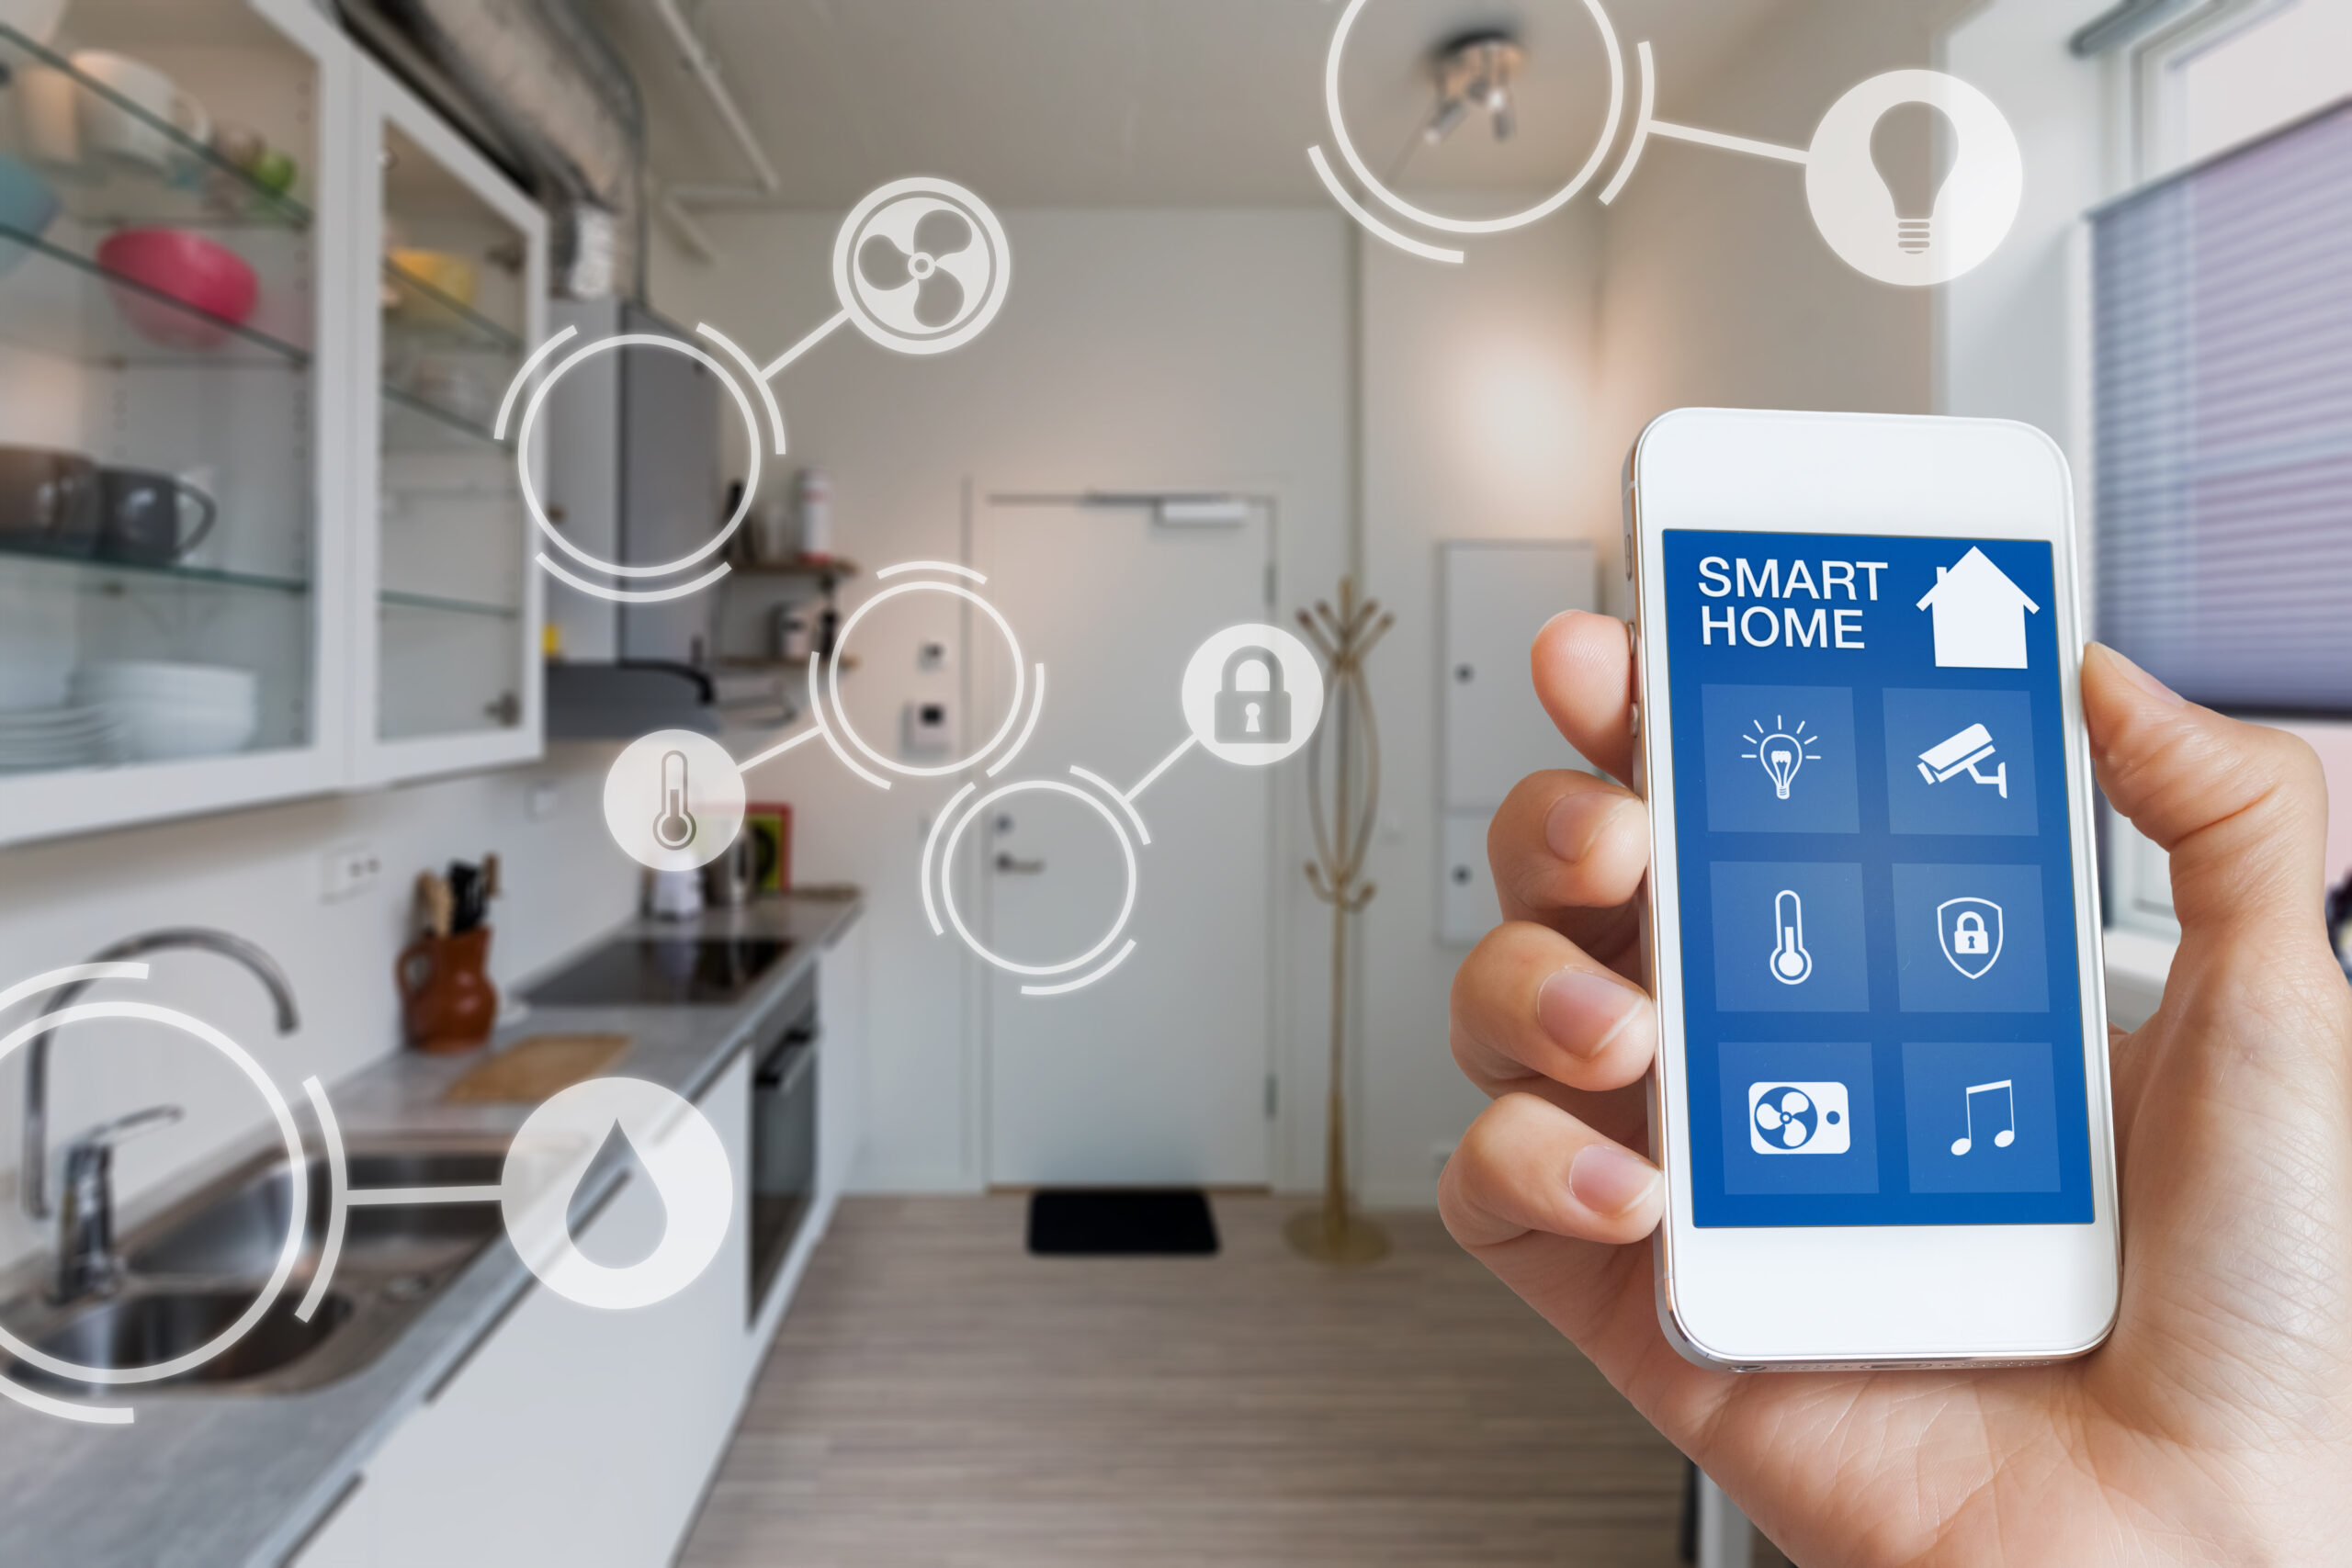 Mão segurando celular com aplicativo de smart home, que conecta diferentes dispositivos em uma casa utilizando IoT